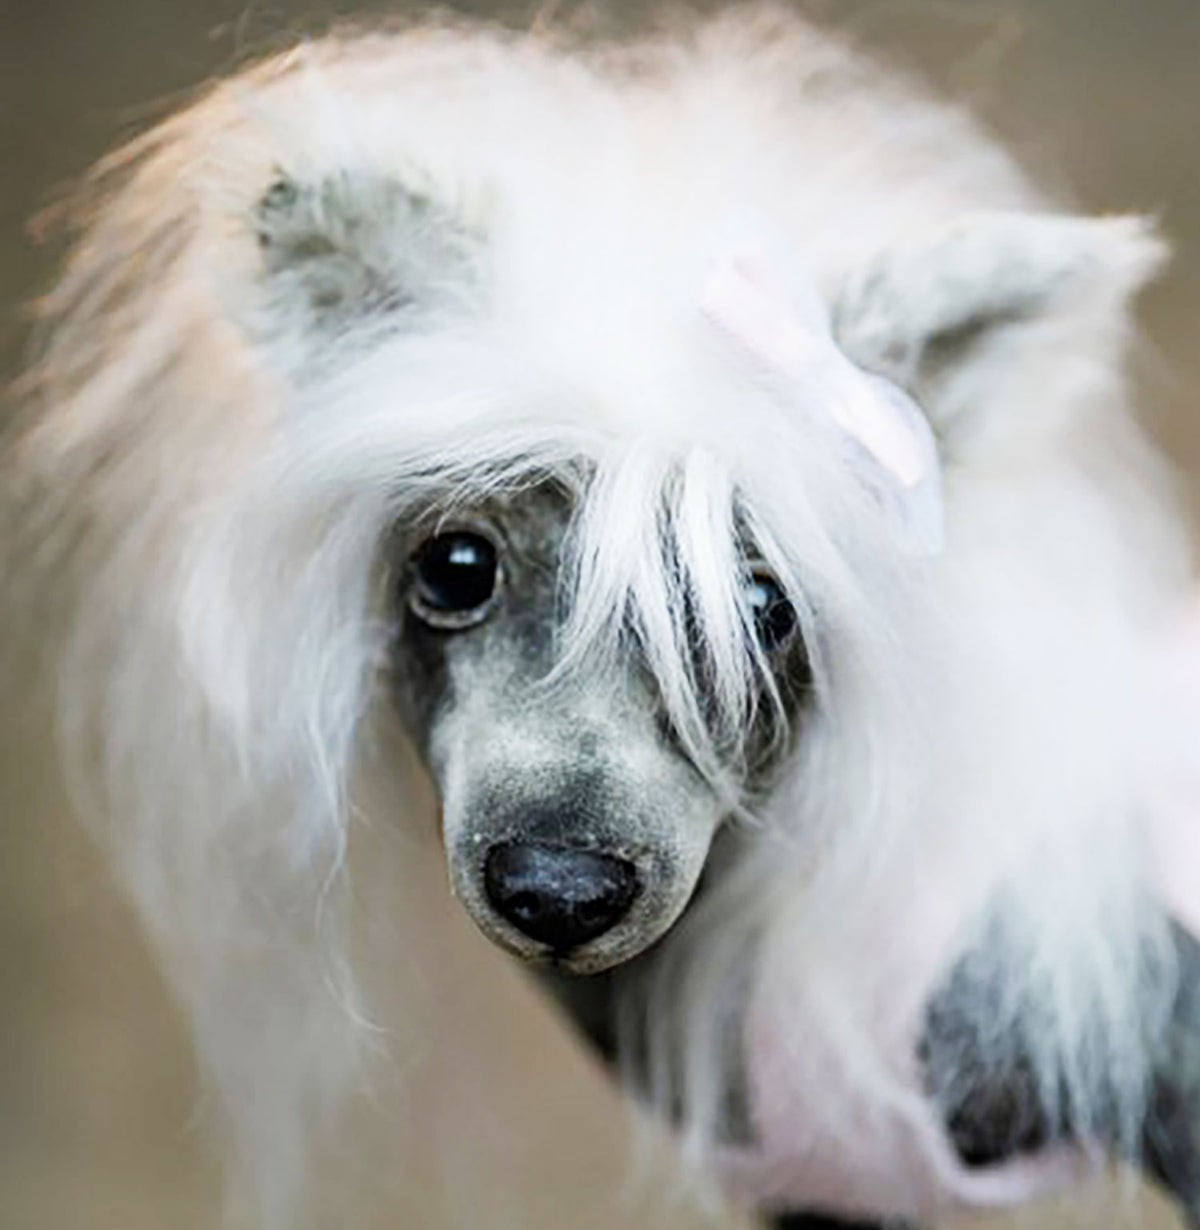 PLUSH Dog, Dog Stuffed Animal from Photos - Big Chinese Crested Dog